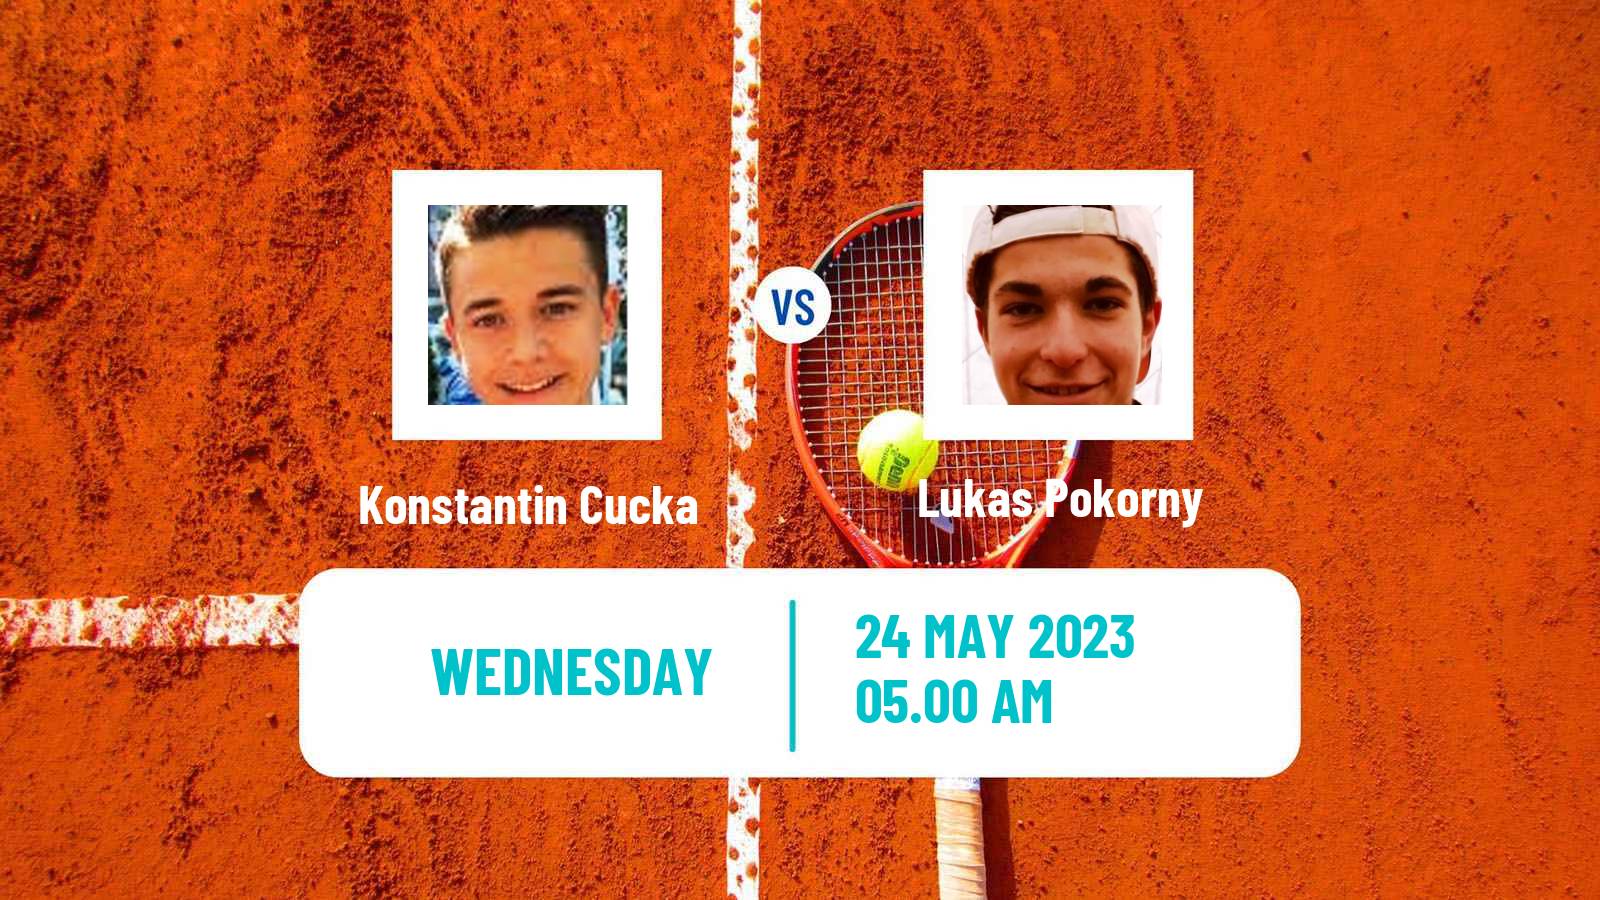 Tennis ITF M15 Brcko Men Konstantin Cucka - Lukas Pokorny